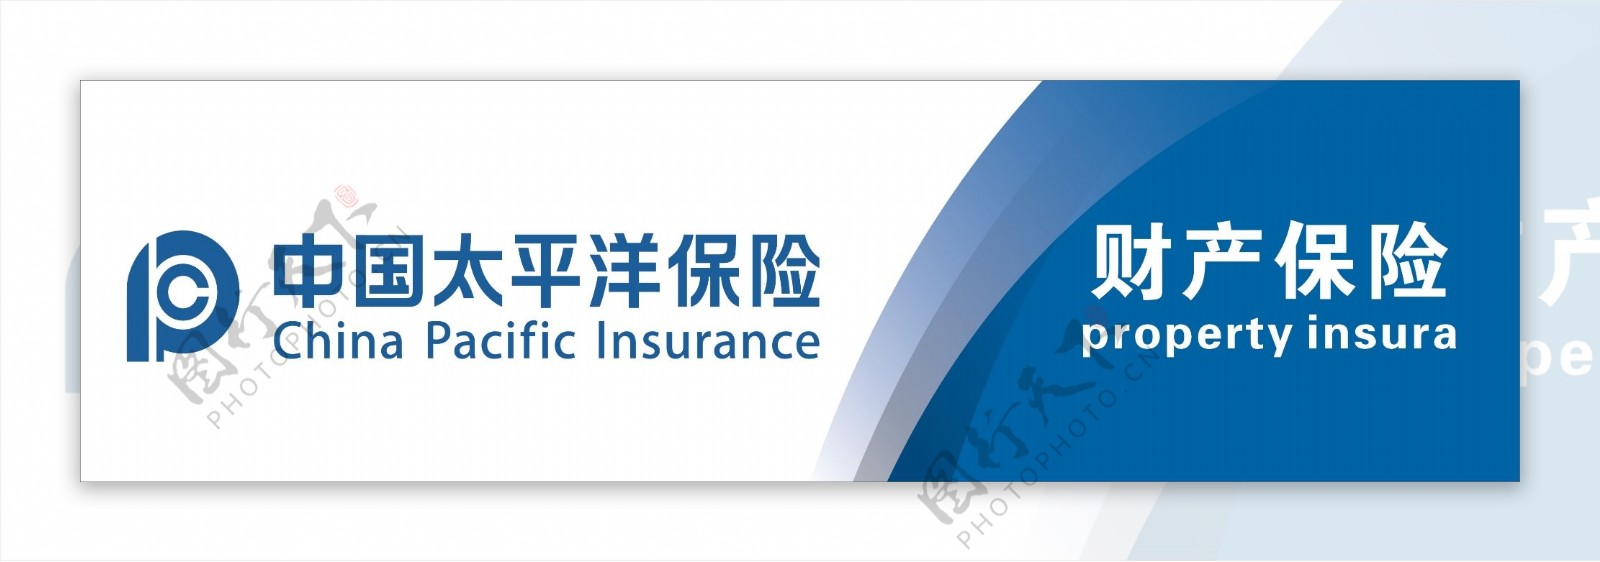 中国太平洋保险门头